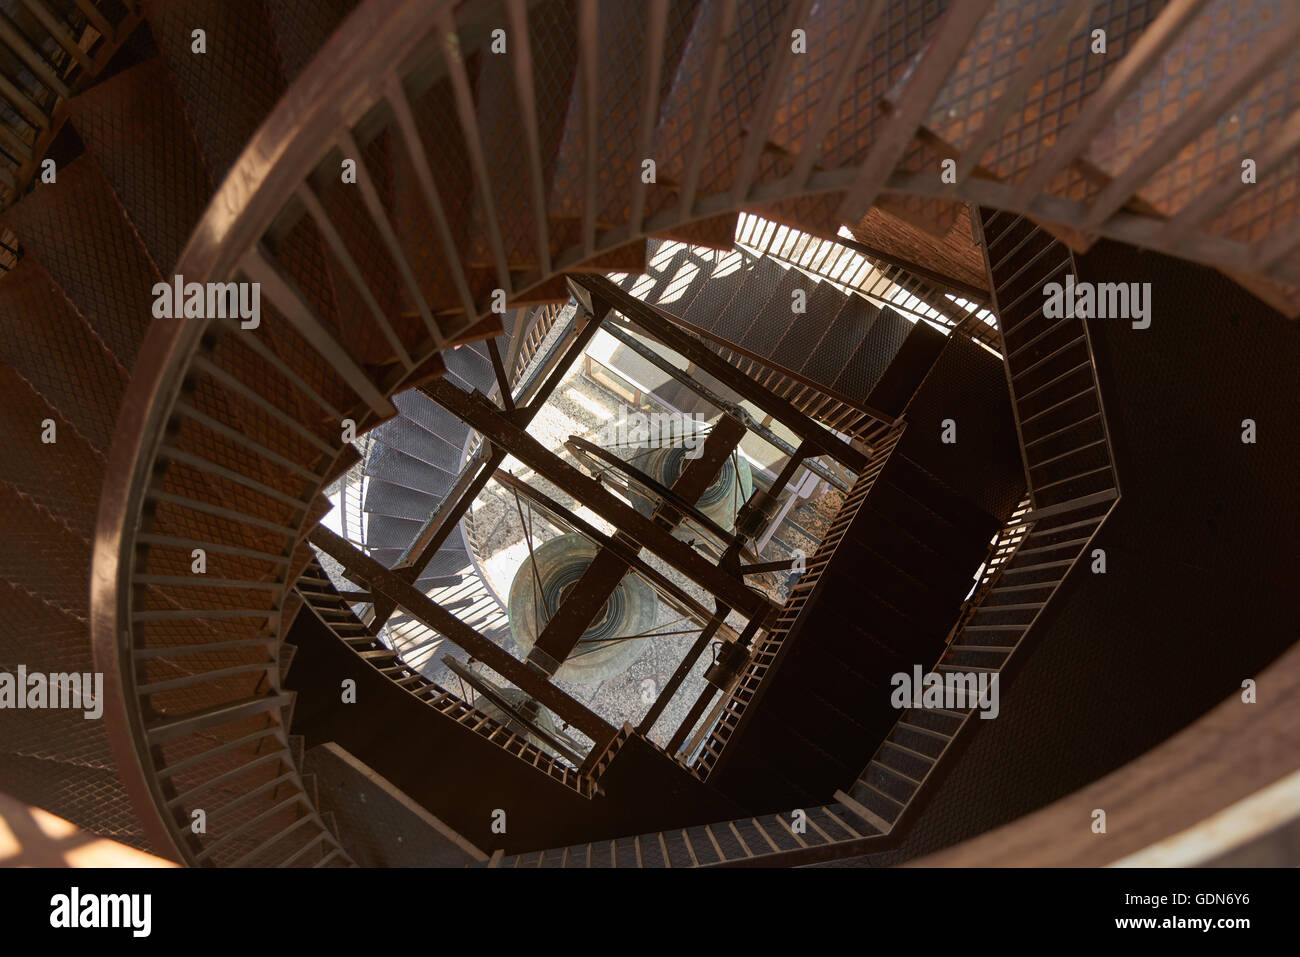 Treppen in Torre dei Lamberti, einen 84 m hohen Turm in Verona, Norditalien. Es liegt in der Nähe der Piazza Delle Erbe. Stockfoto